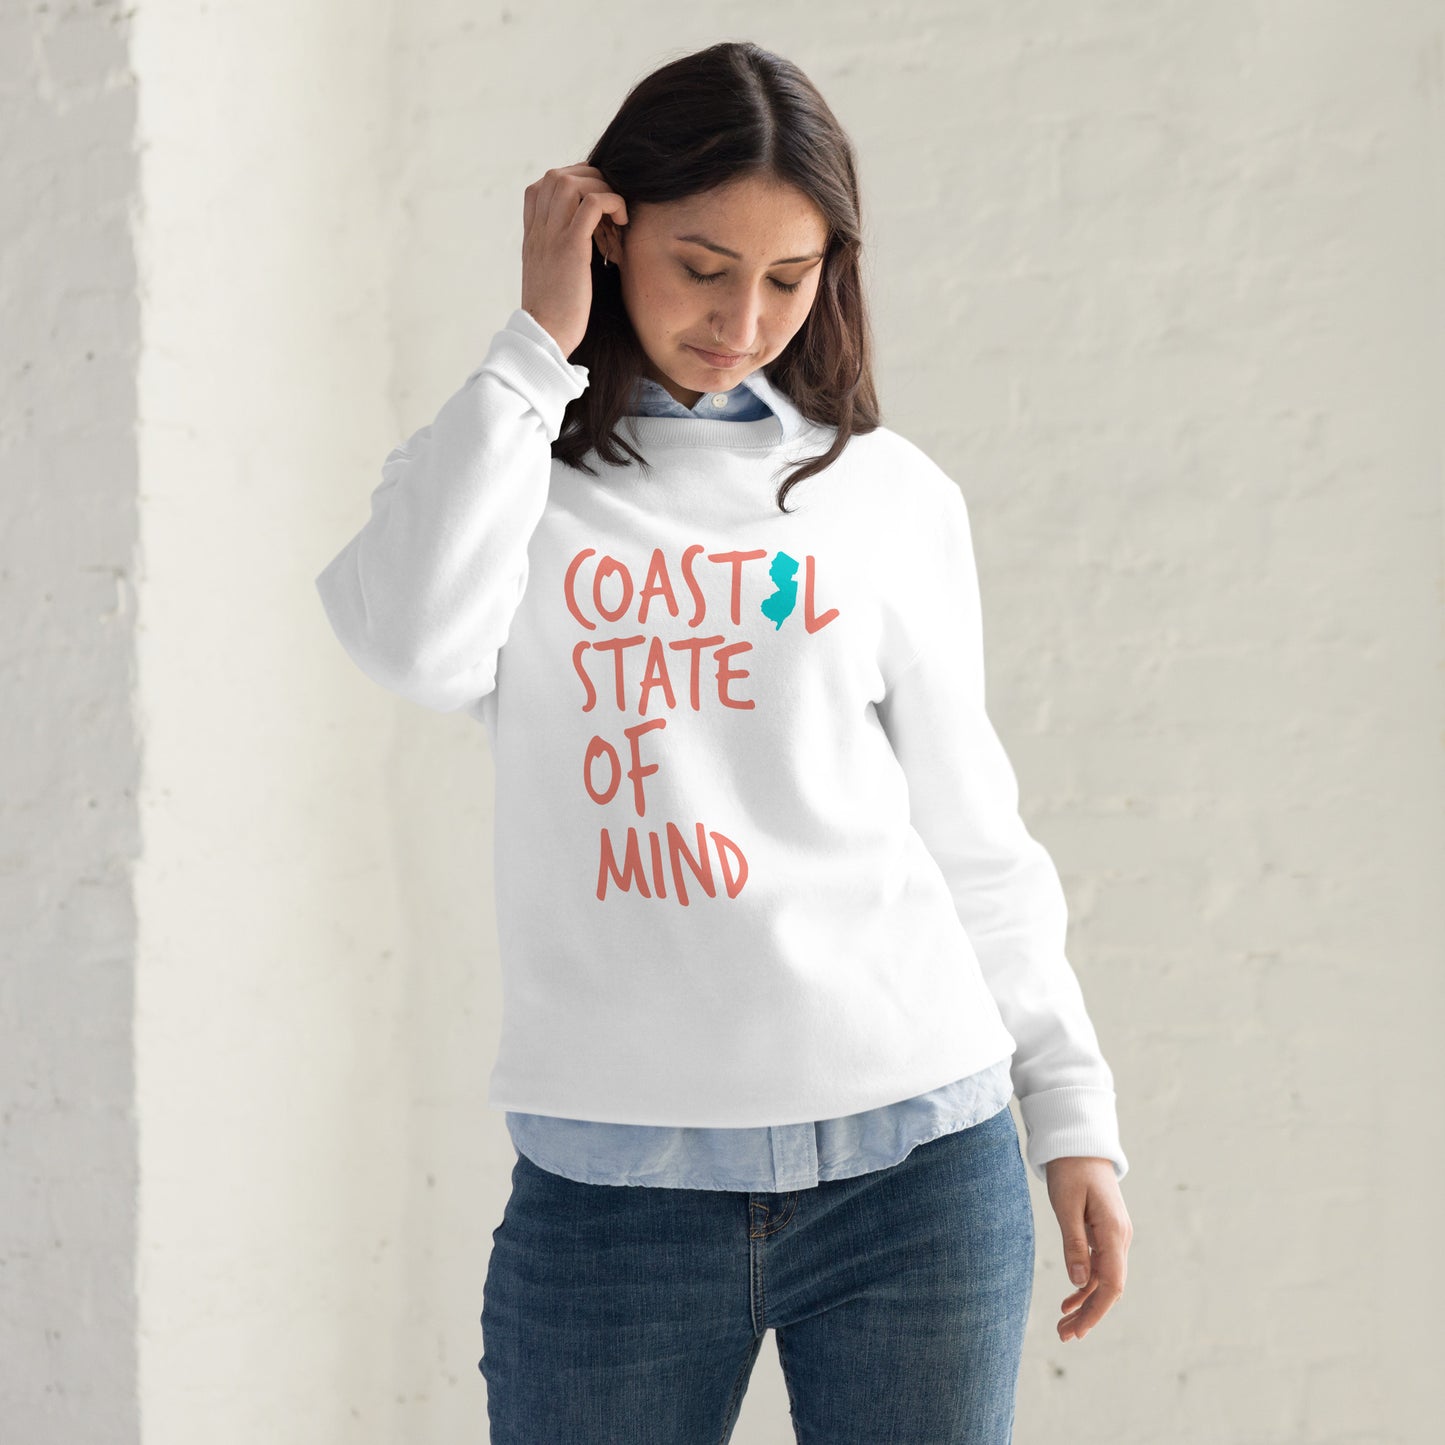 Coastal State of Mind New Jersey™ Fashion Sweatshirt